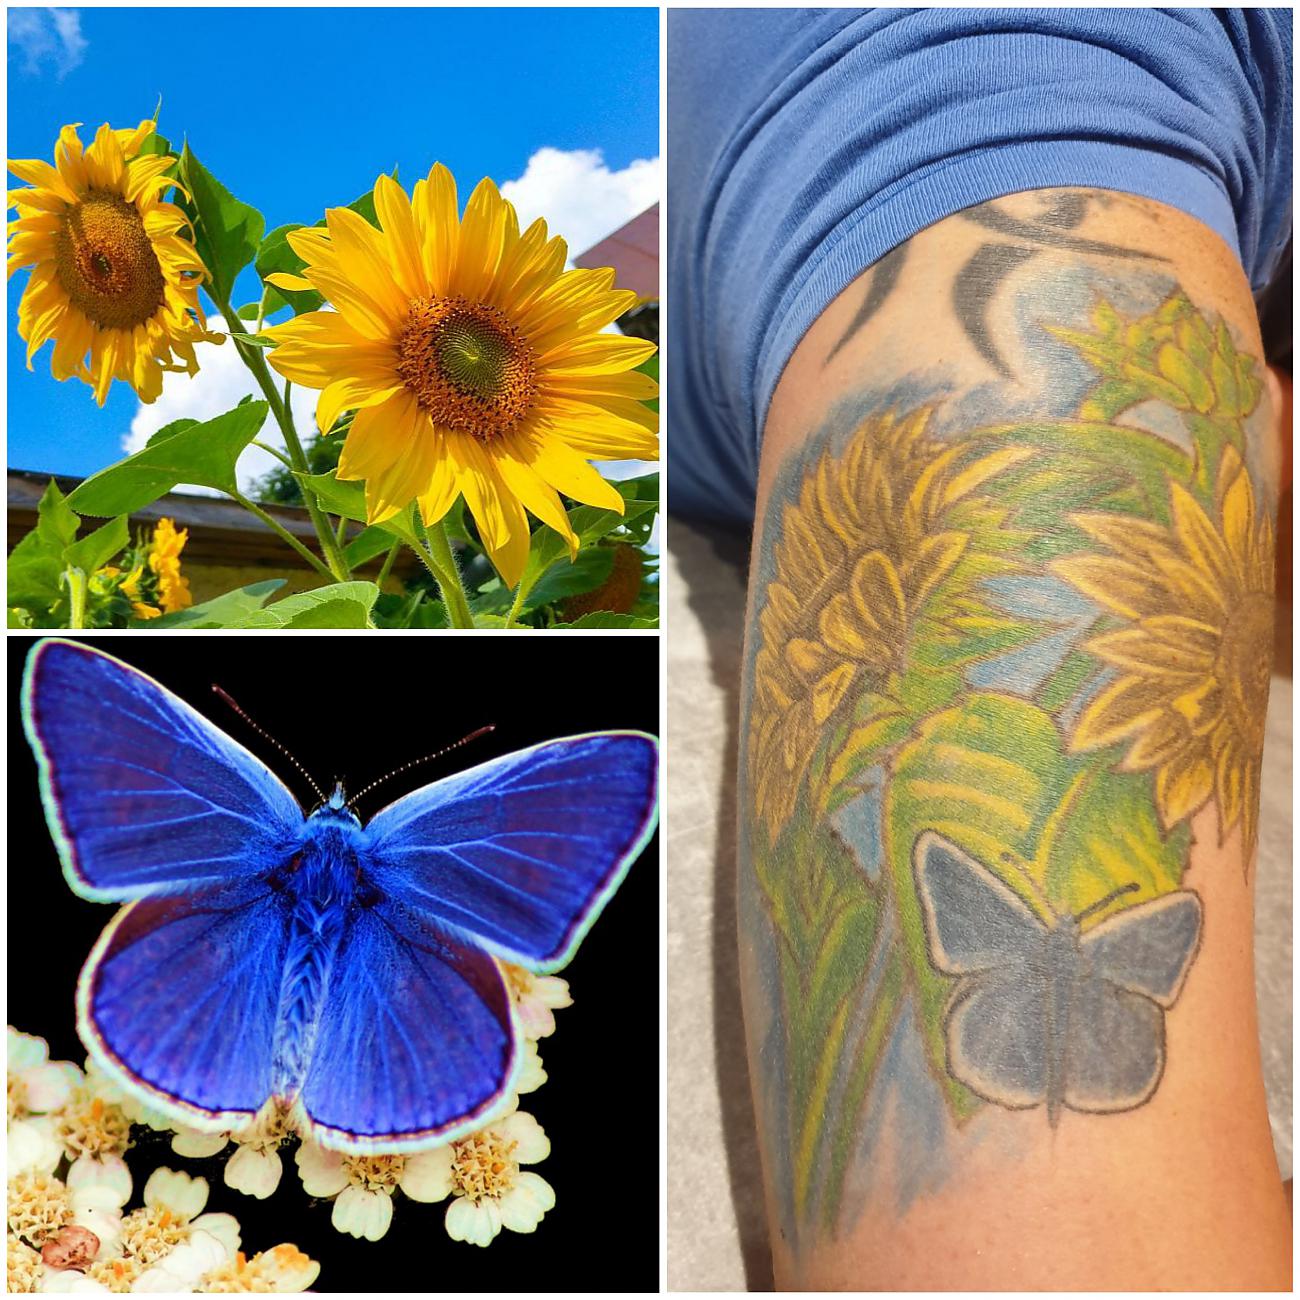 Foto: Martin Zehrer - Links die originalen Bilder als Vorlagen und rechts im Bild das wunderschöne Ergebnis in Form eines detaillierten Tattoos...  <br />
 